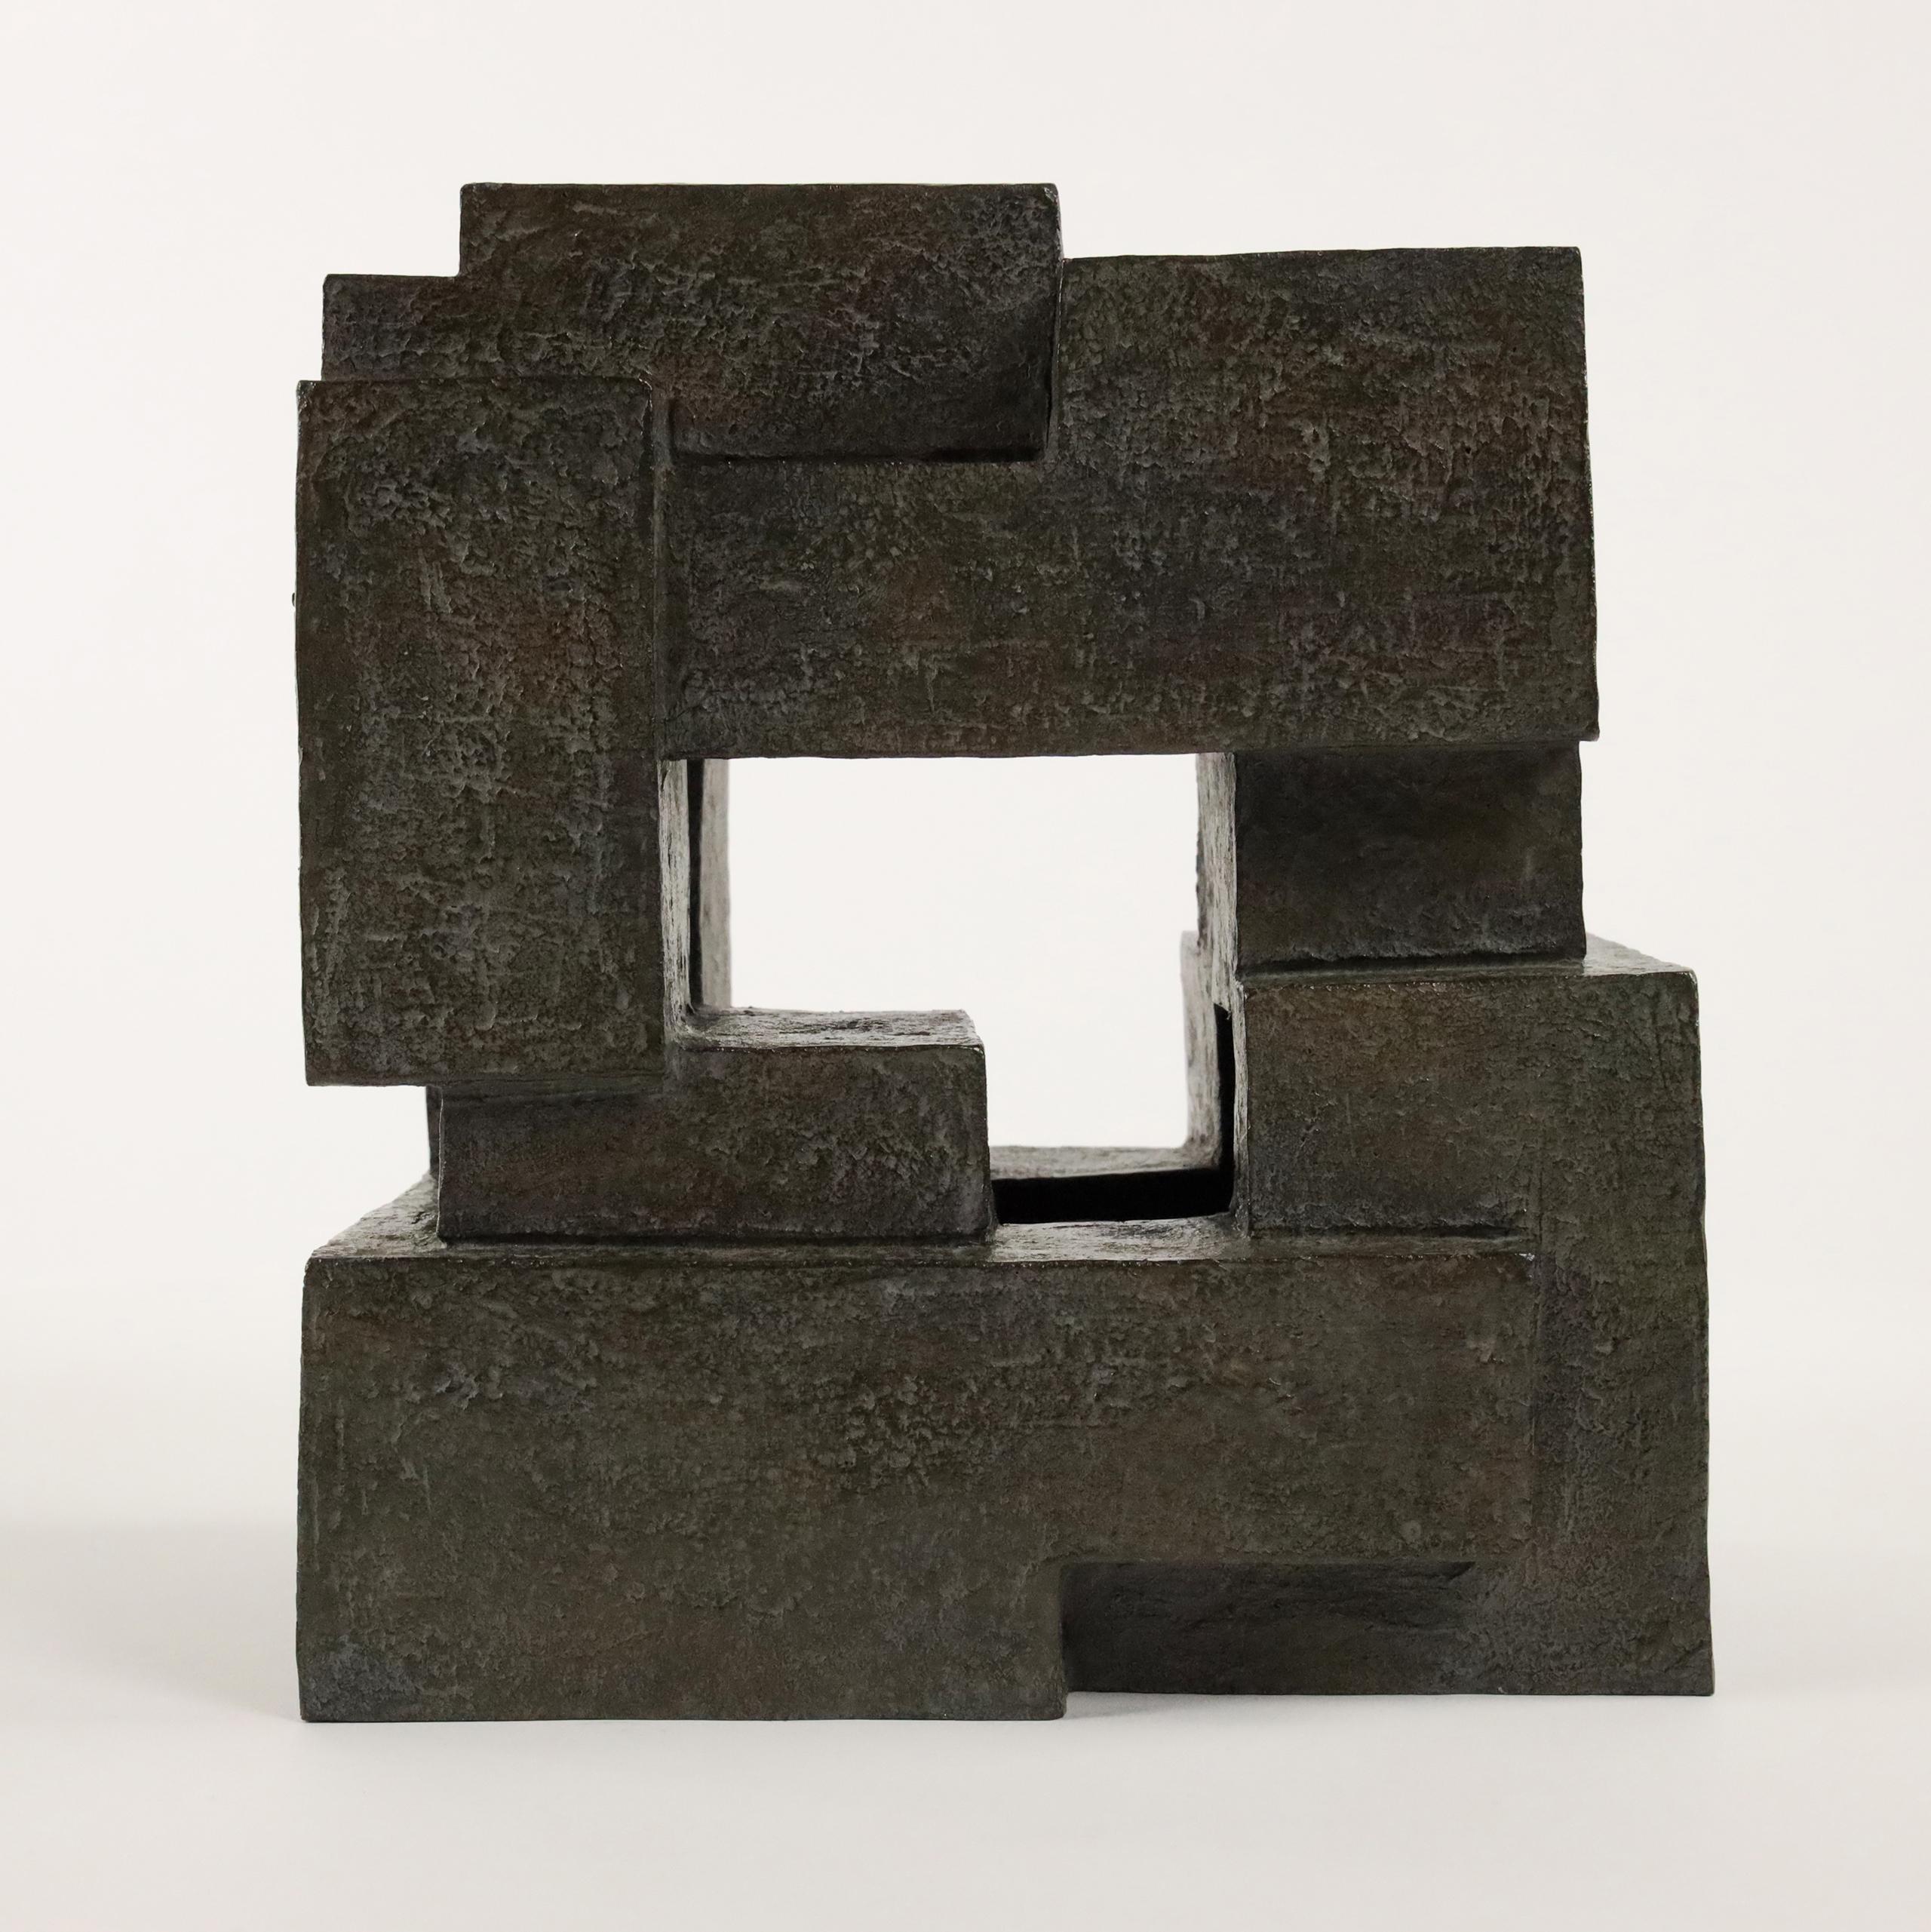 Block VIII ist eine Bronzeskulptur der französischen zeitgenössischen Künstlerin Delphine Brabant aus der Serie "Architecture".
23 cm × 20 cm × 16 cm. Limitierte Auflage von 8 Exemplaren und 4 Probedrucken des Künstlers.
In dieser Serie entwirft der